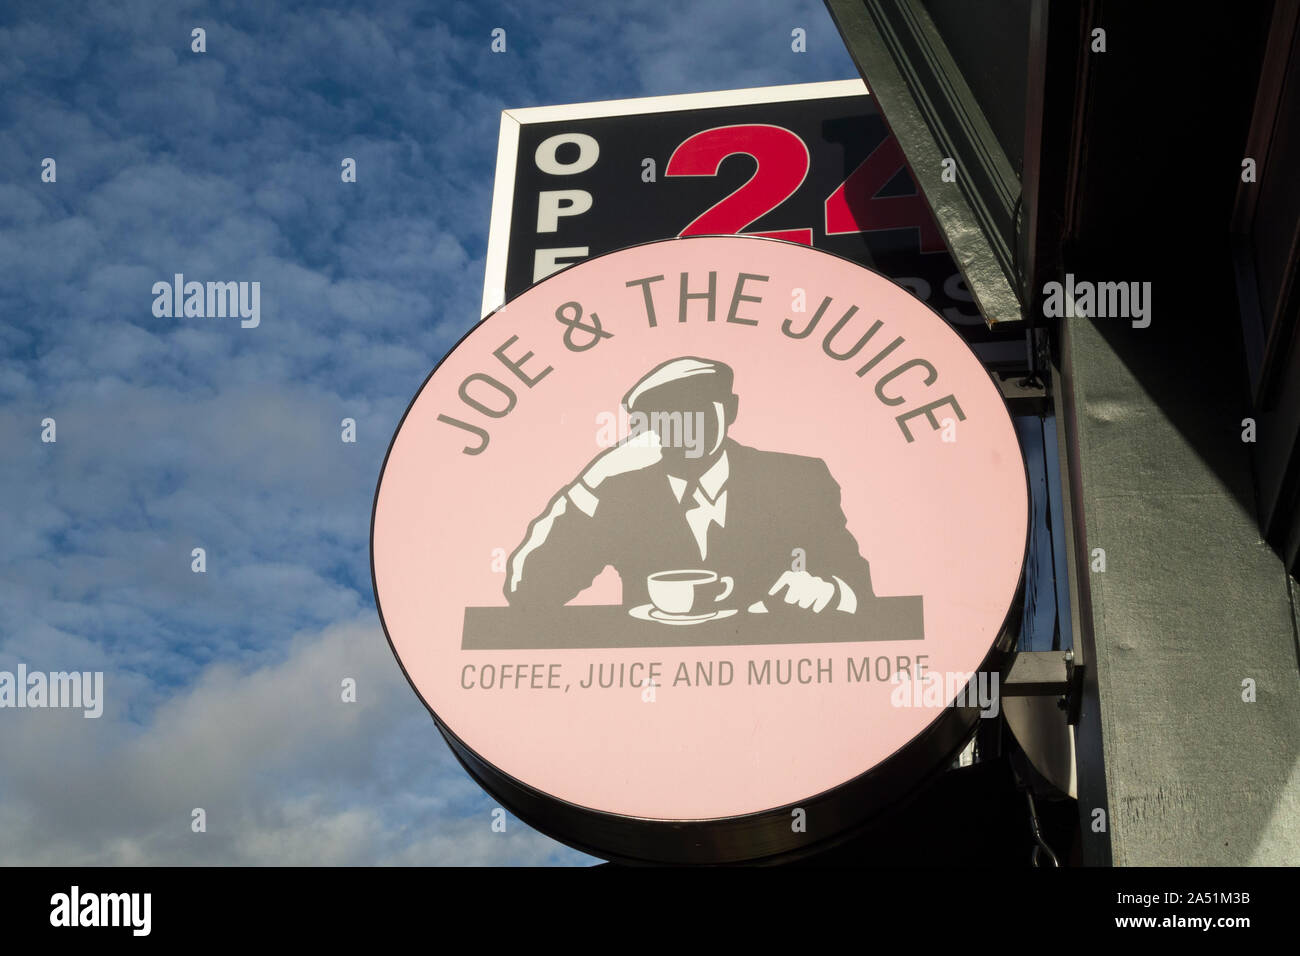 Joe & The Juice signage and logo Stock Photo